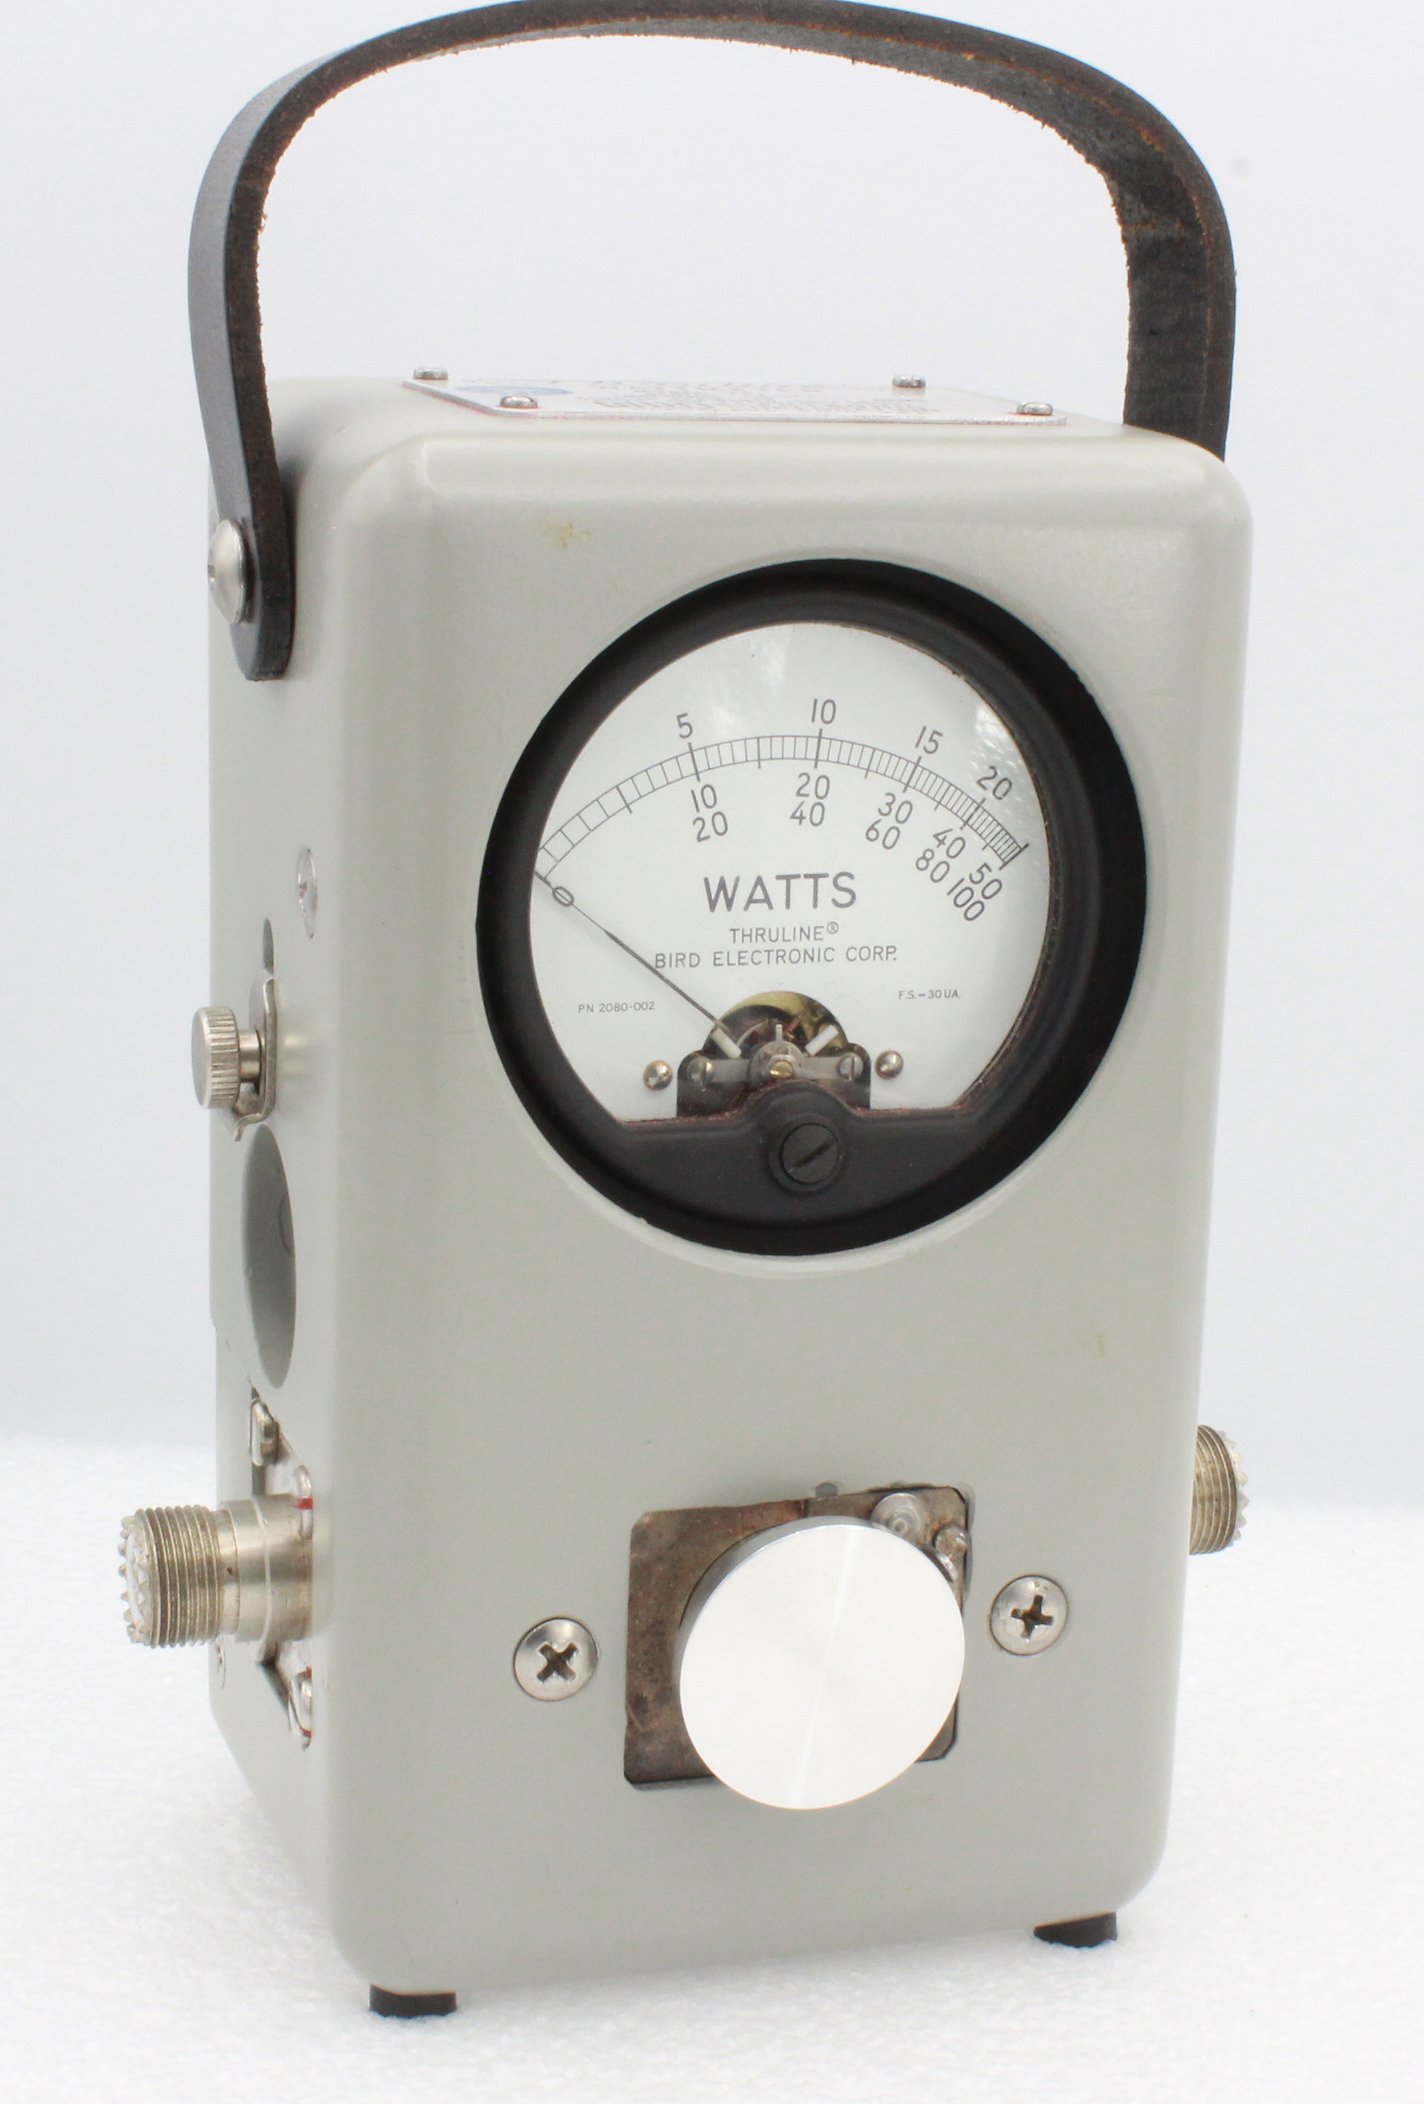 Bird 43 Thruline RF Wattmeter (Used) In Excellent Condition #97805 Bird 43 Wattmeter Used